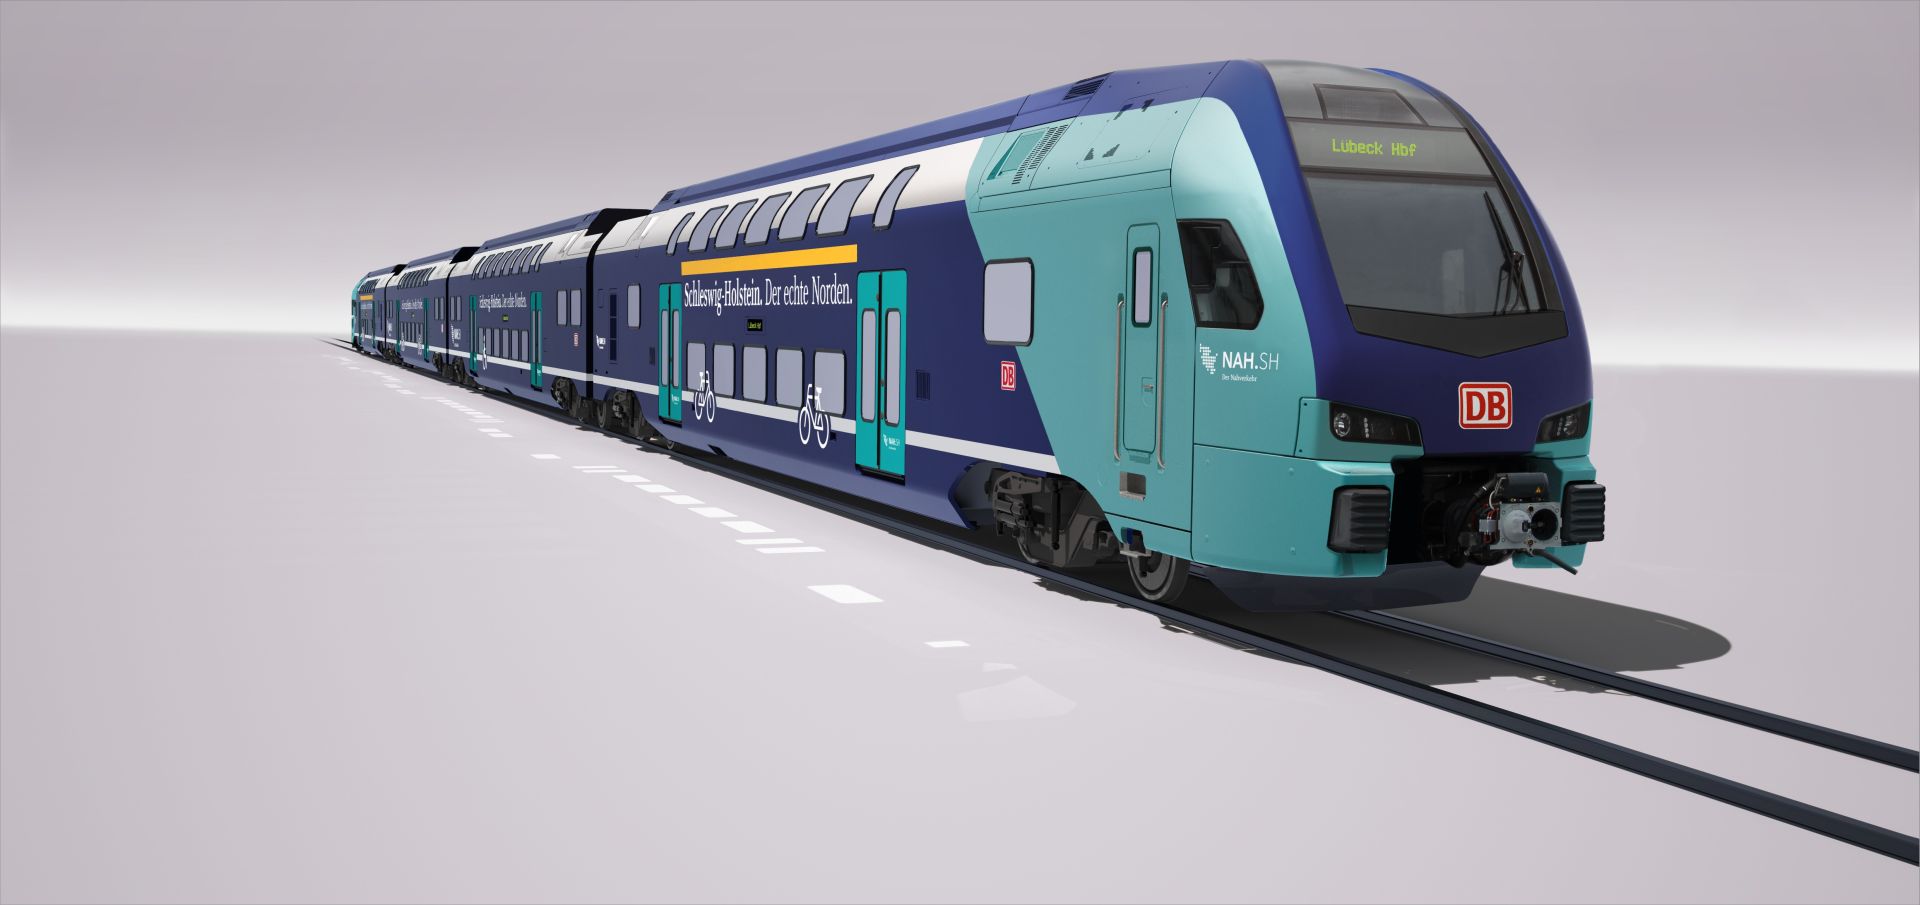 Stadler Kiss v barvách pro DB Regio pro provoz ve Šlesvicku - Holštýnsku. Foto: Stadler